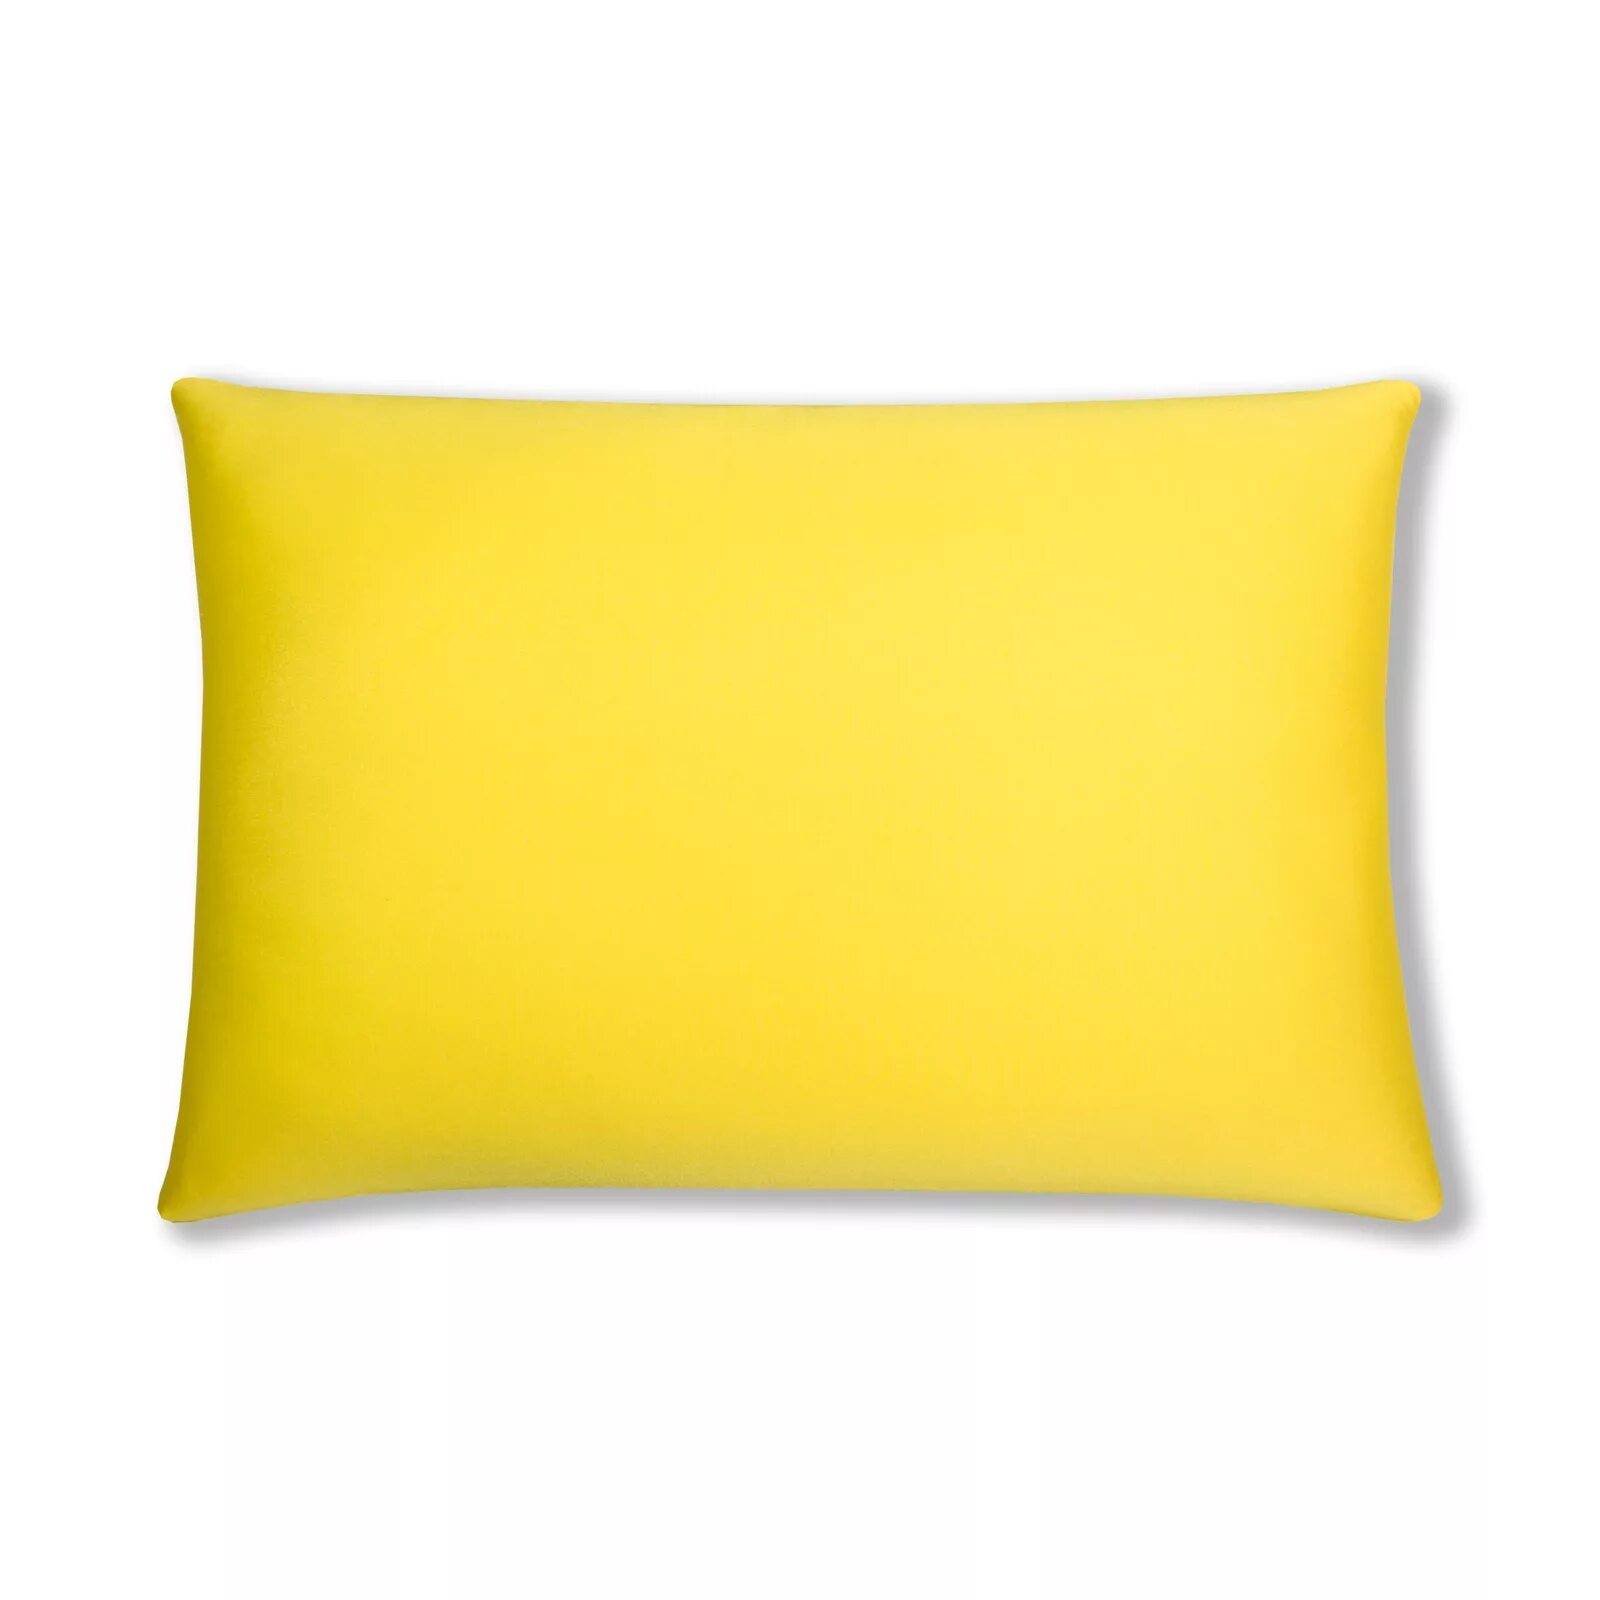 Наволочки 50х70 см. Подушка желтый. Подушка желтая декоративная. Желтые диванные подушки.